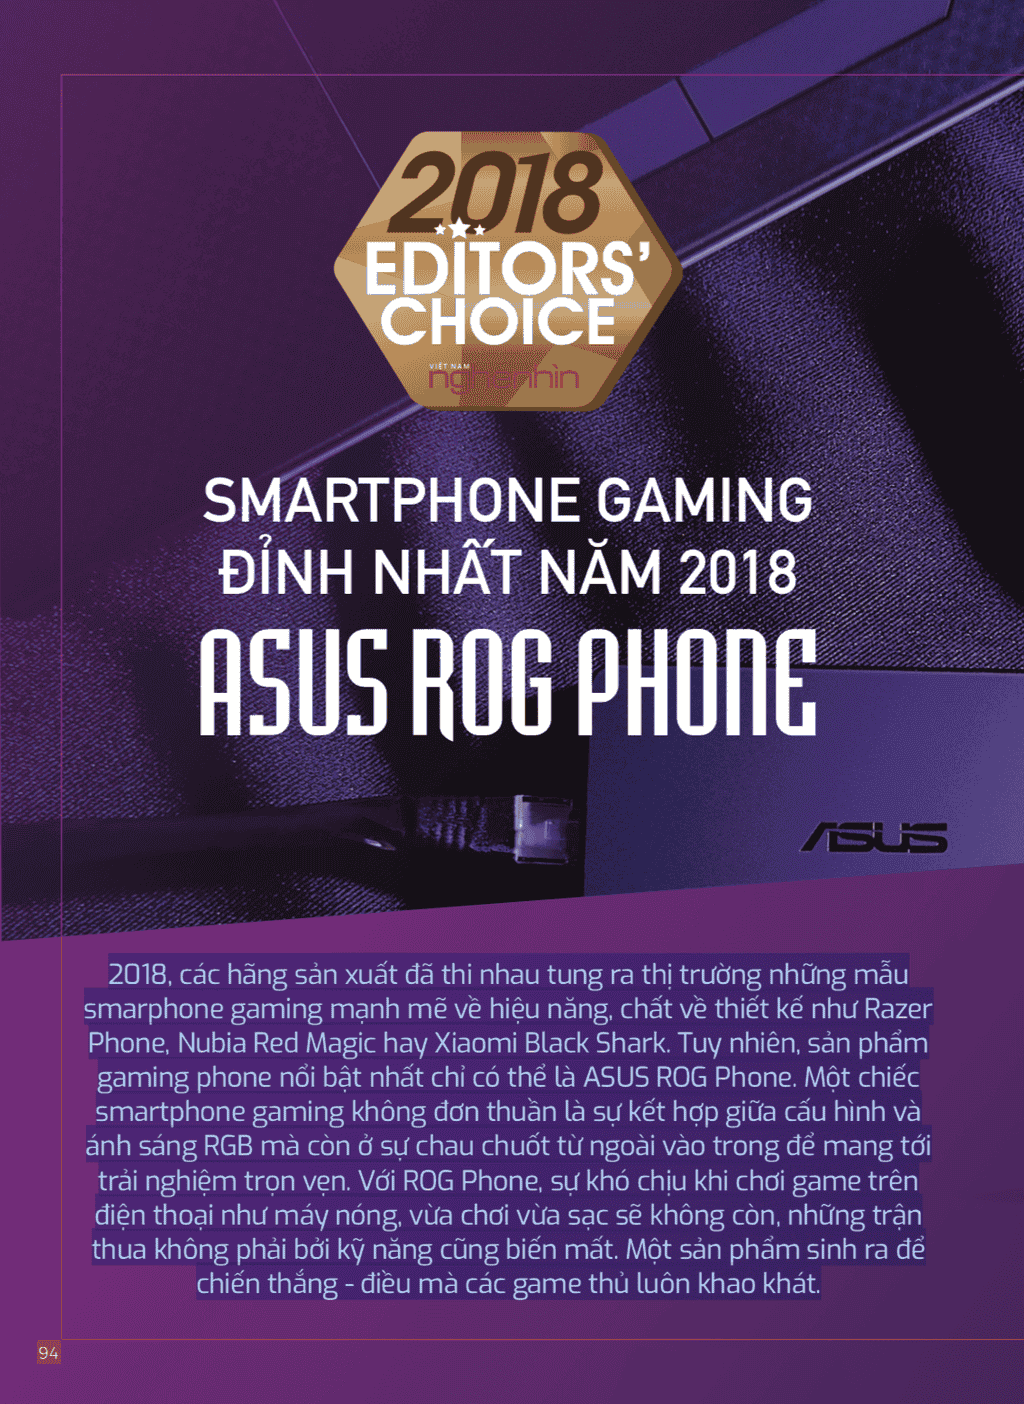 Editors' Choice 2018: ASUS ROG Phone - Smartphone gaming đỉnh nhất năm 2018  ảnh 1